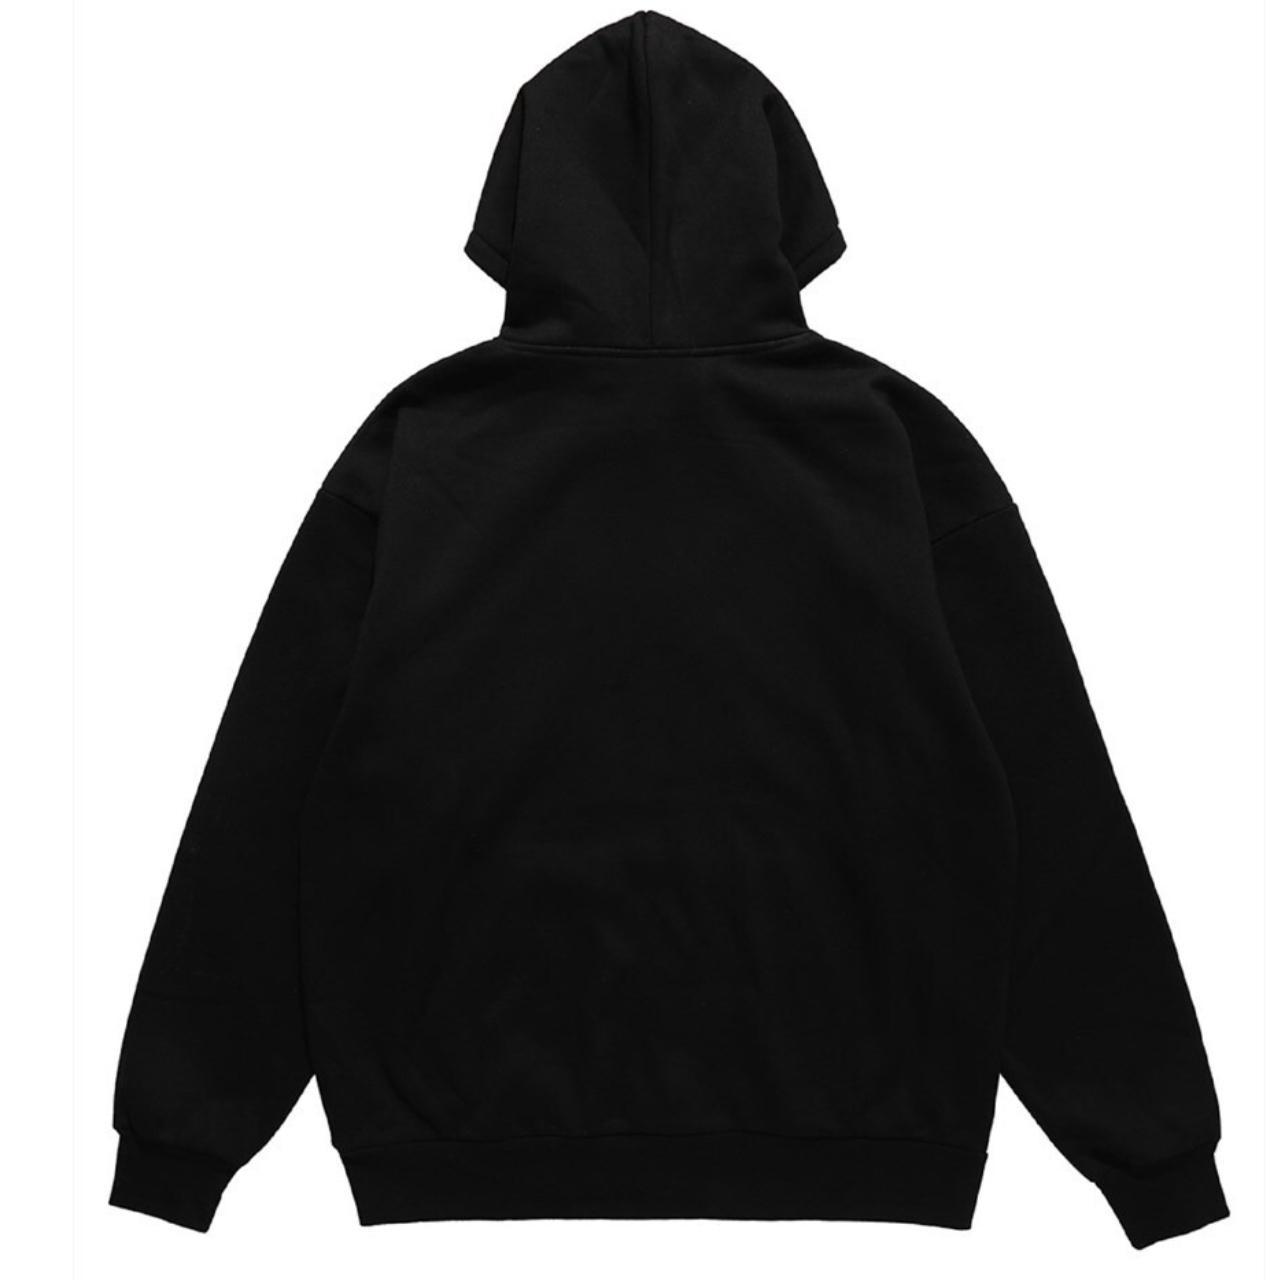 Guilty hoodie raver pullover simple back top in... - Depop